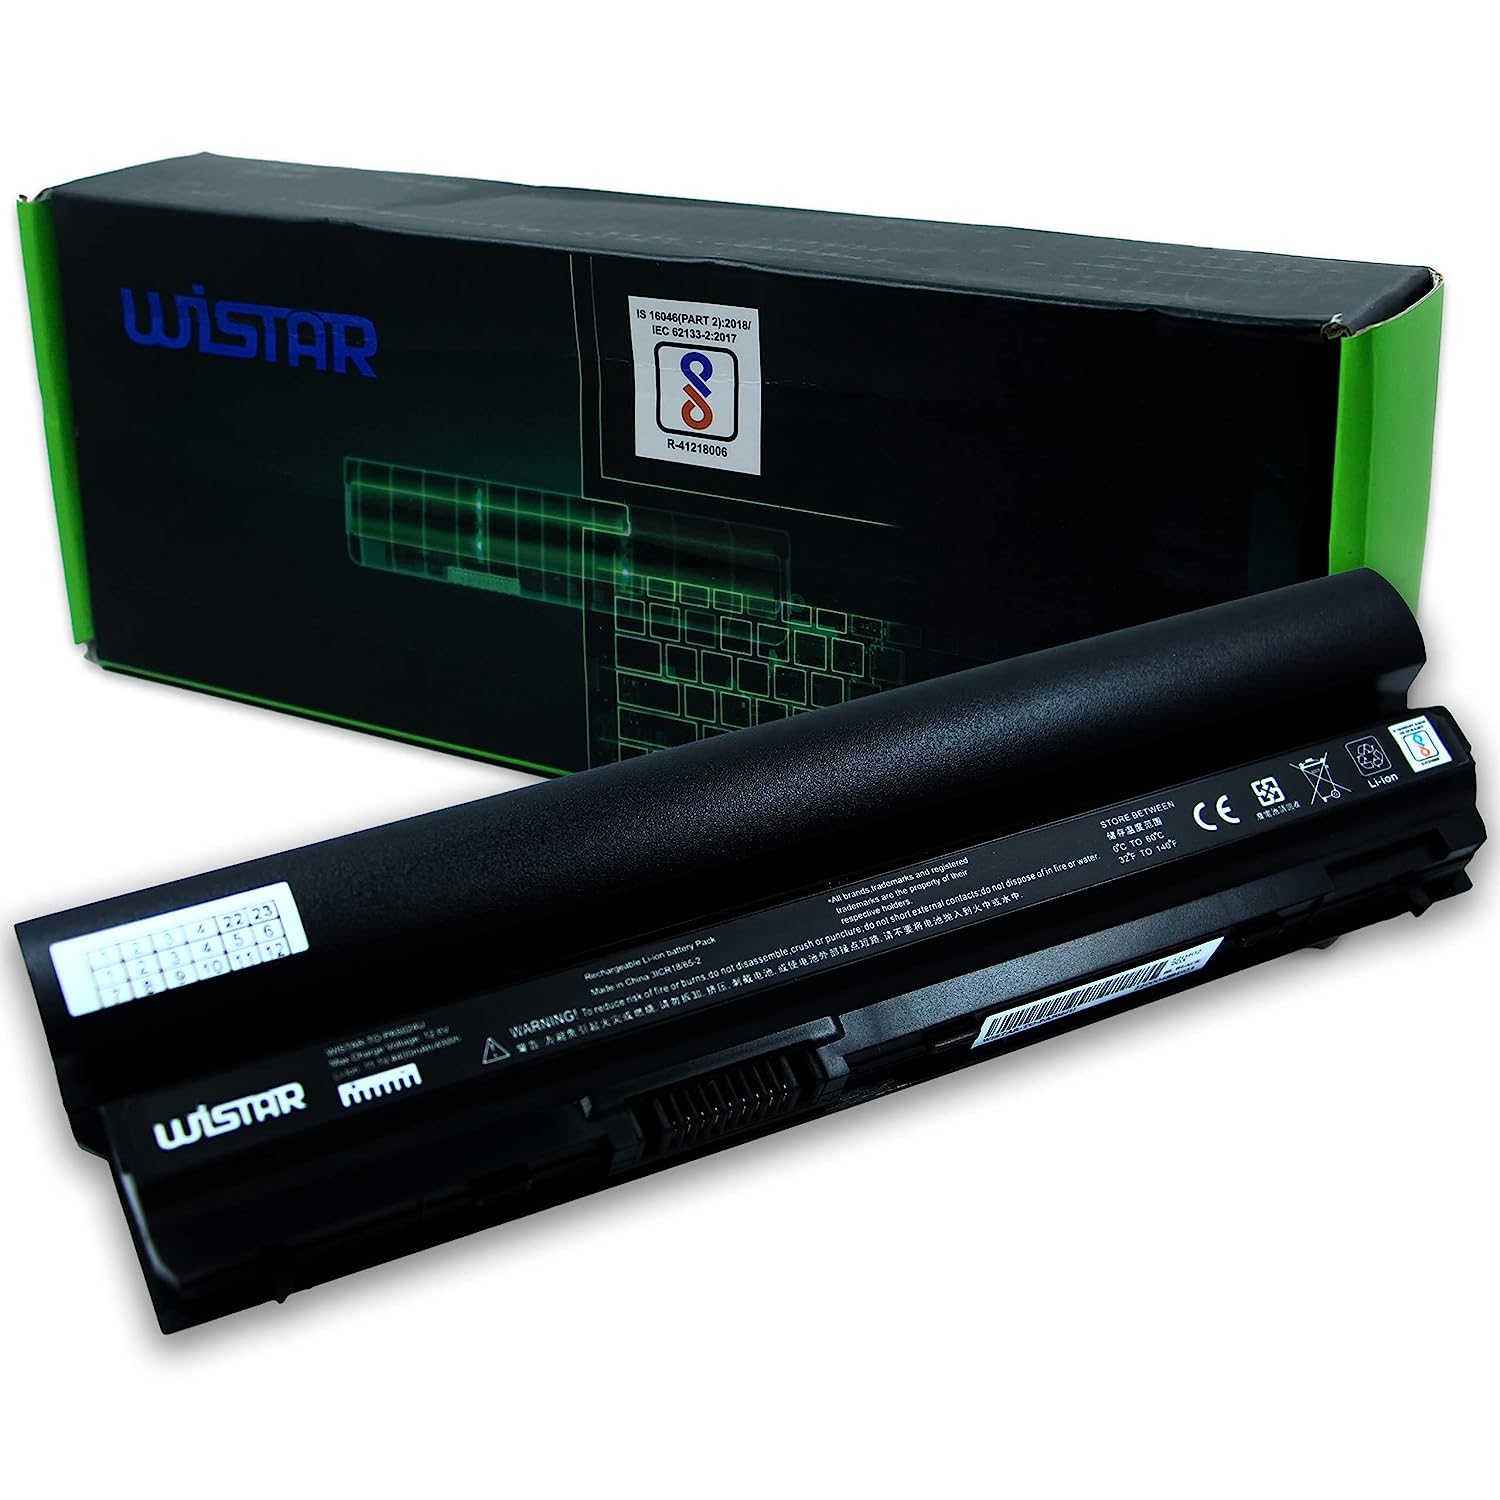 WISTAR Replacement Laptop Battery for Dell Latitude E6230 E6220 E6320 E6330 E6430s